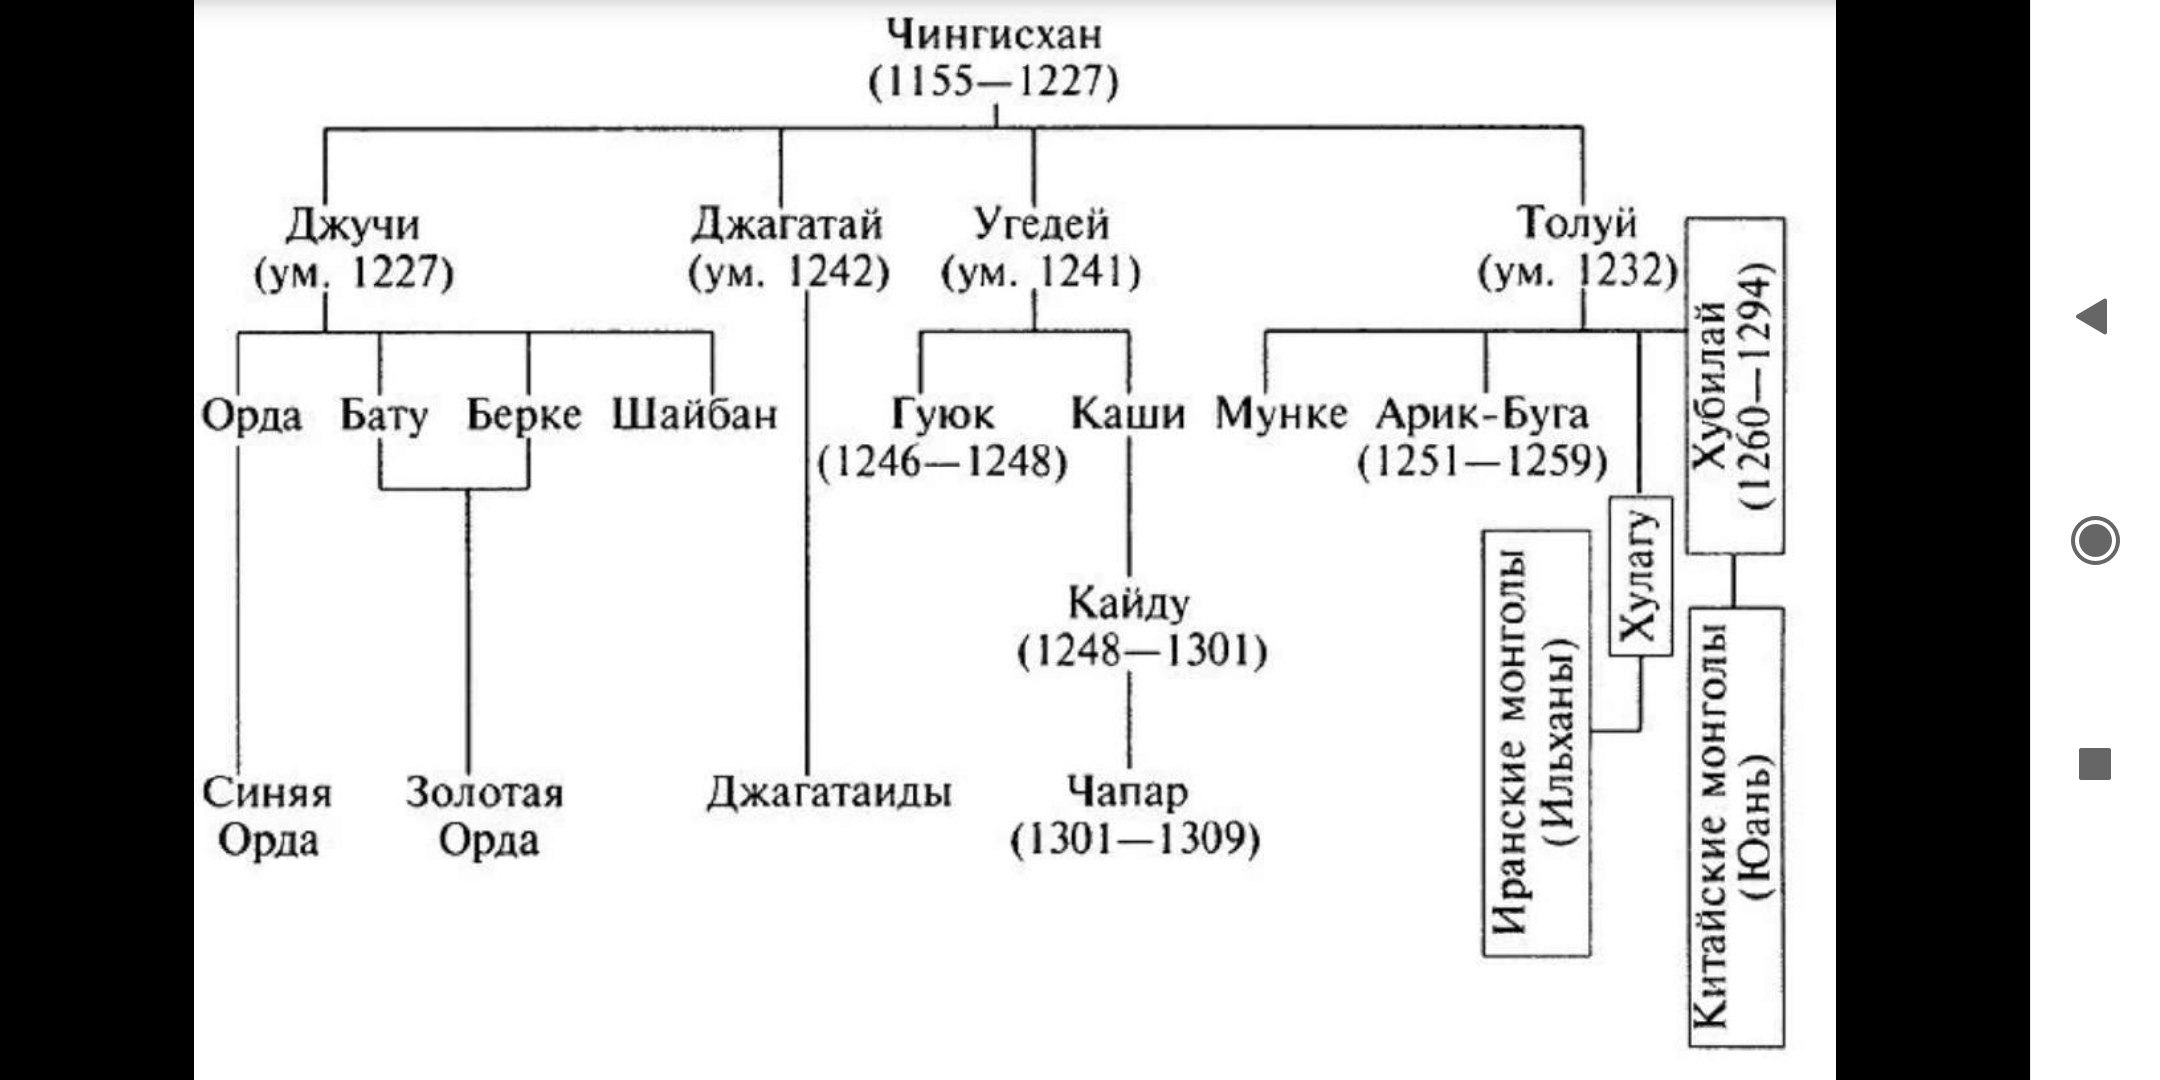 Великие ханы после чингисхана. Династия Чингисхана родословная. Генеалогическое Древо Чингисхана схема. Родословная Чингисхана и его потомков.